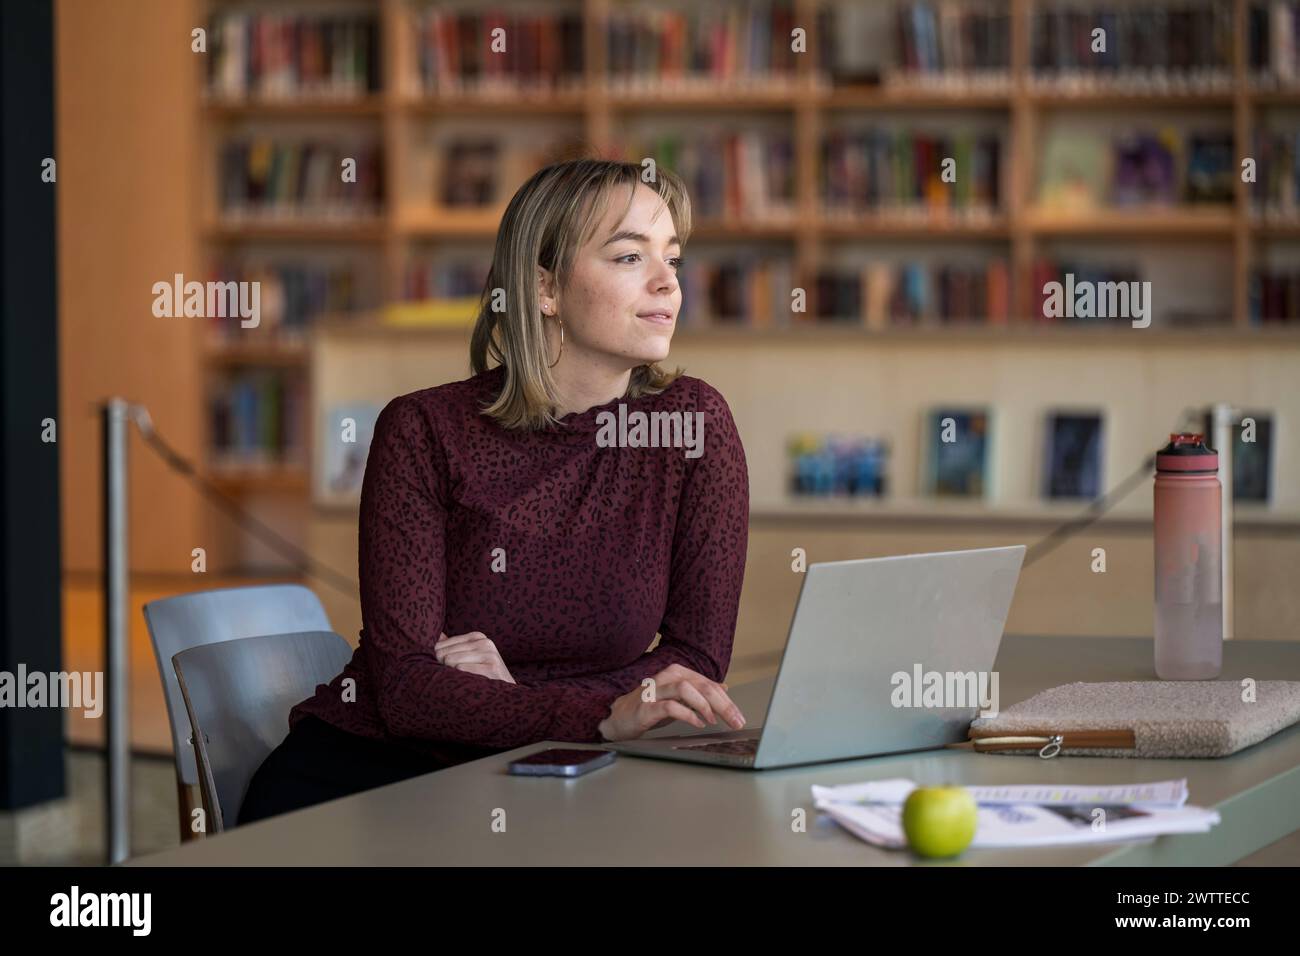 Femme concentrée travaillant sur son ordinateur portable dans un cadre de bibliothèque. Banque D'Images